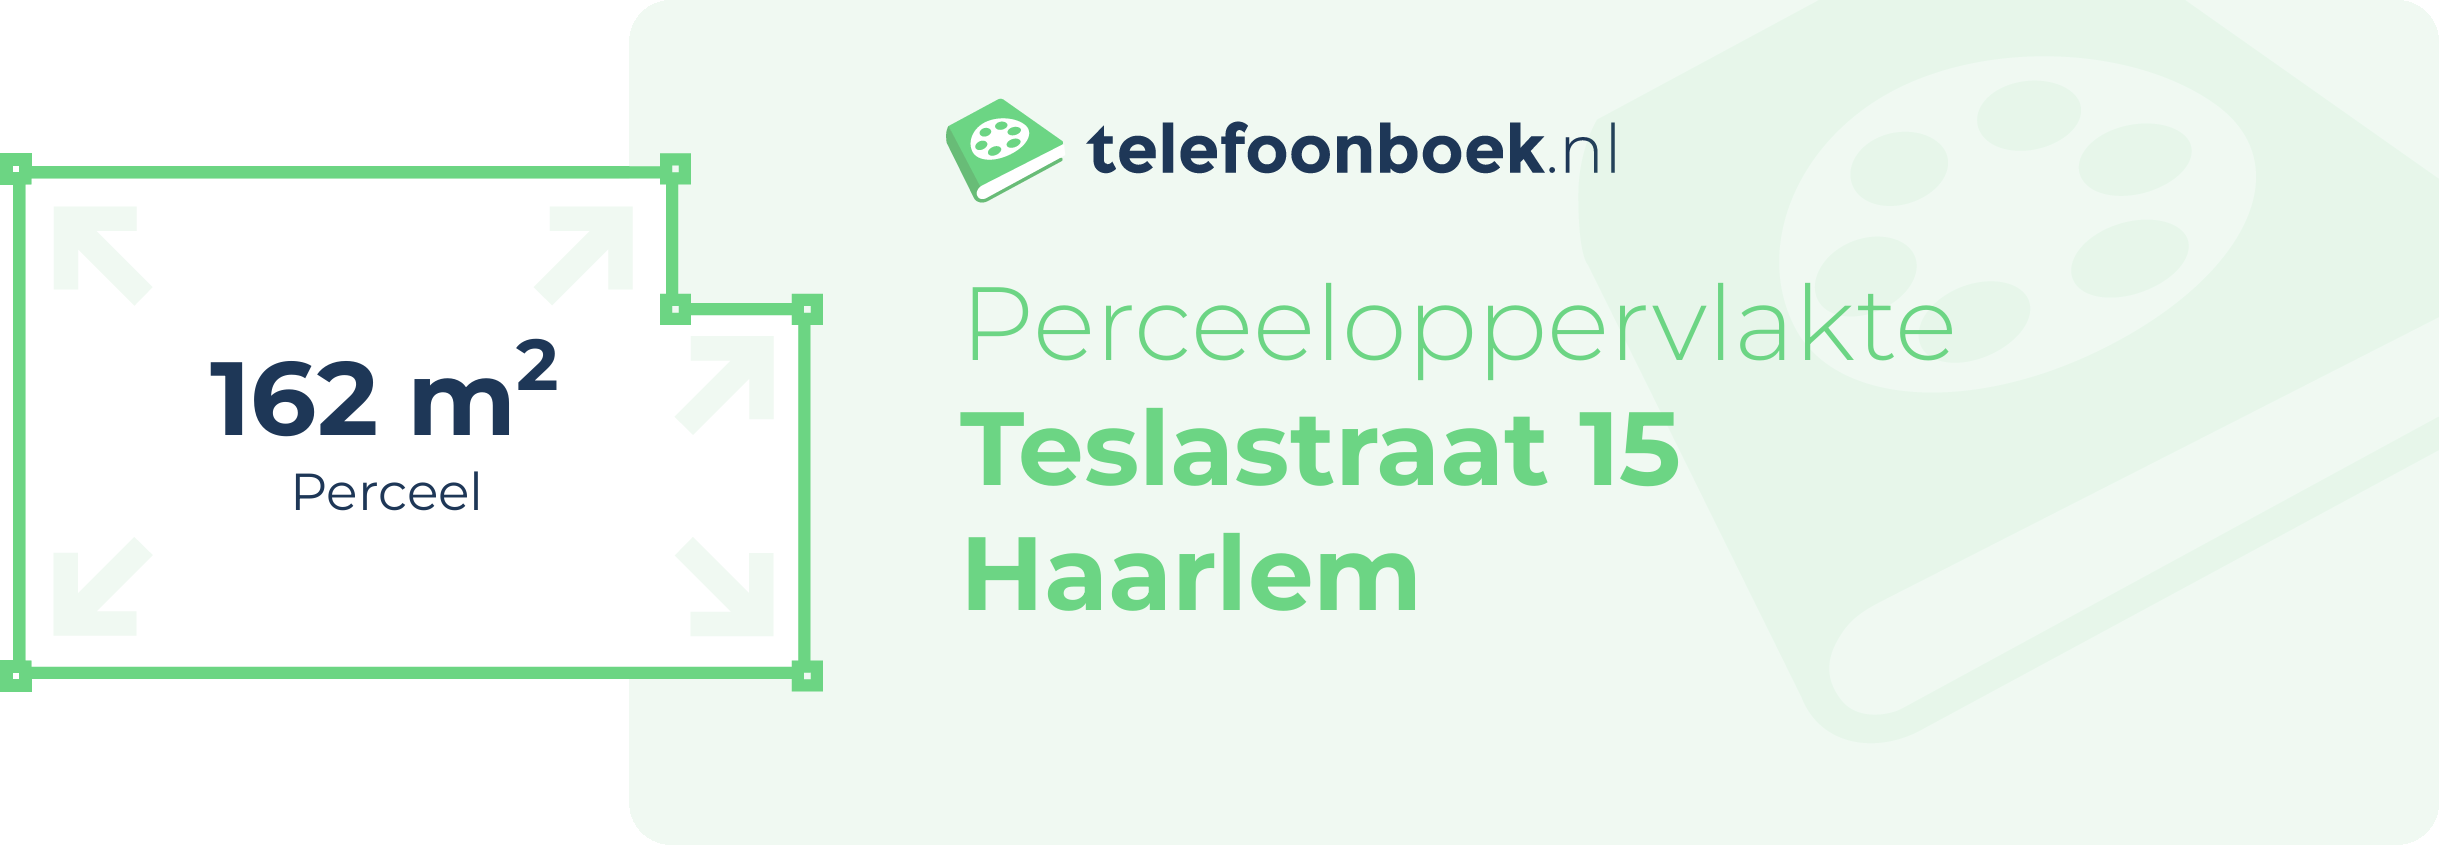 Perceeloppervlakte Teslastraat 15 Haarlem